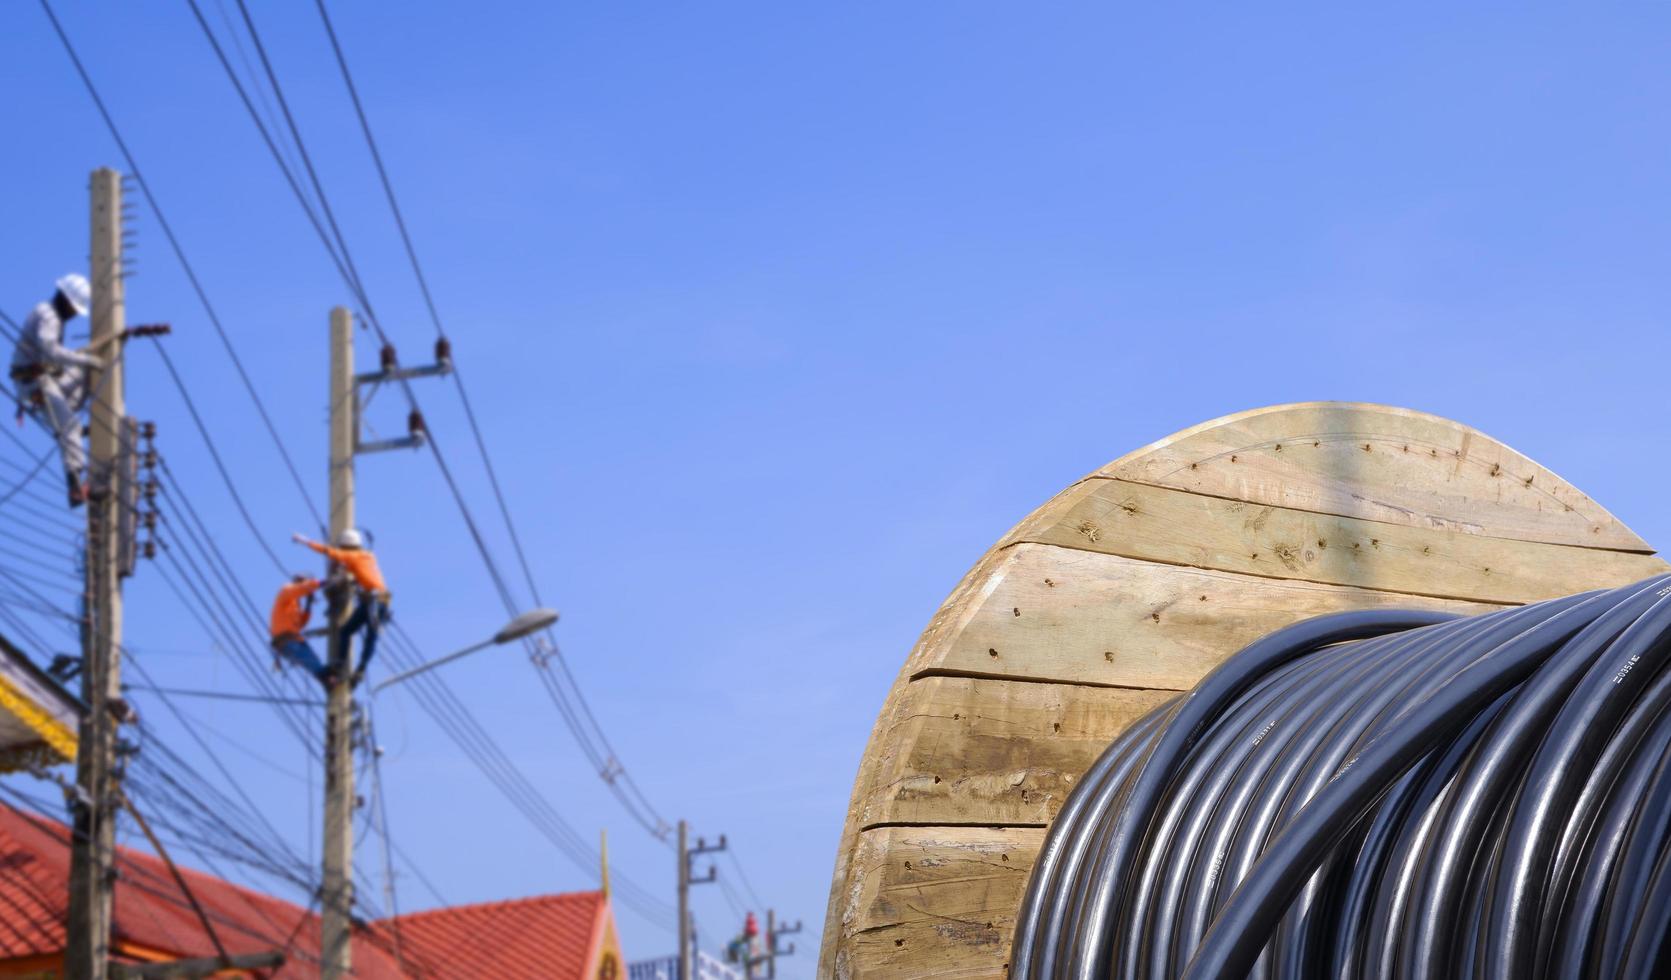 Bobine en bois de câble électrique avec arrière-plan flou du groupe d'électriciens travaillant sur des poteaux électriques contre le ciel bleu photo